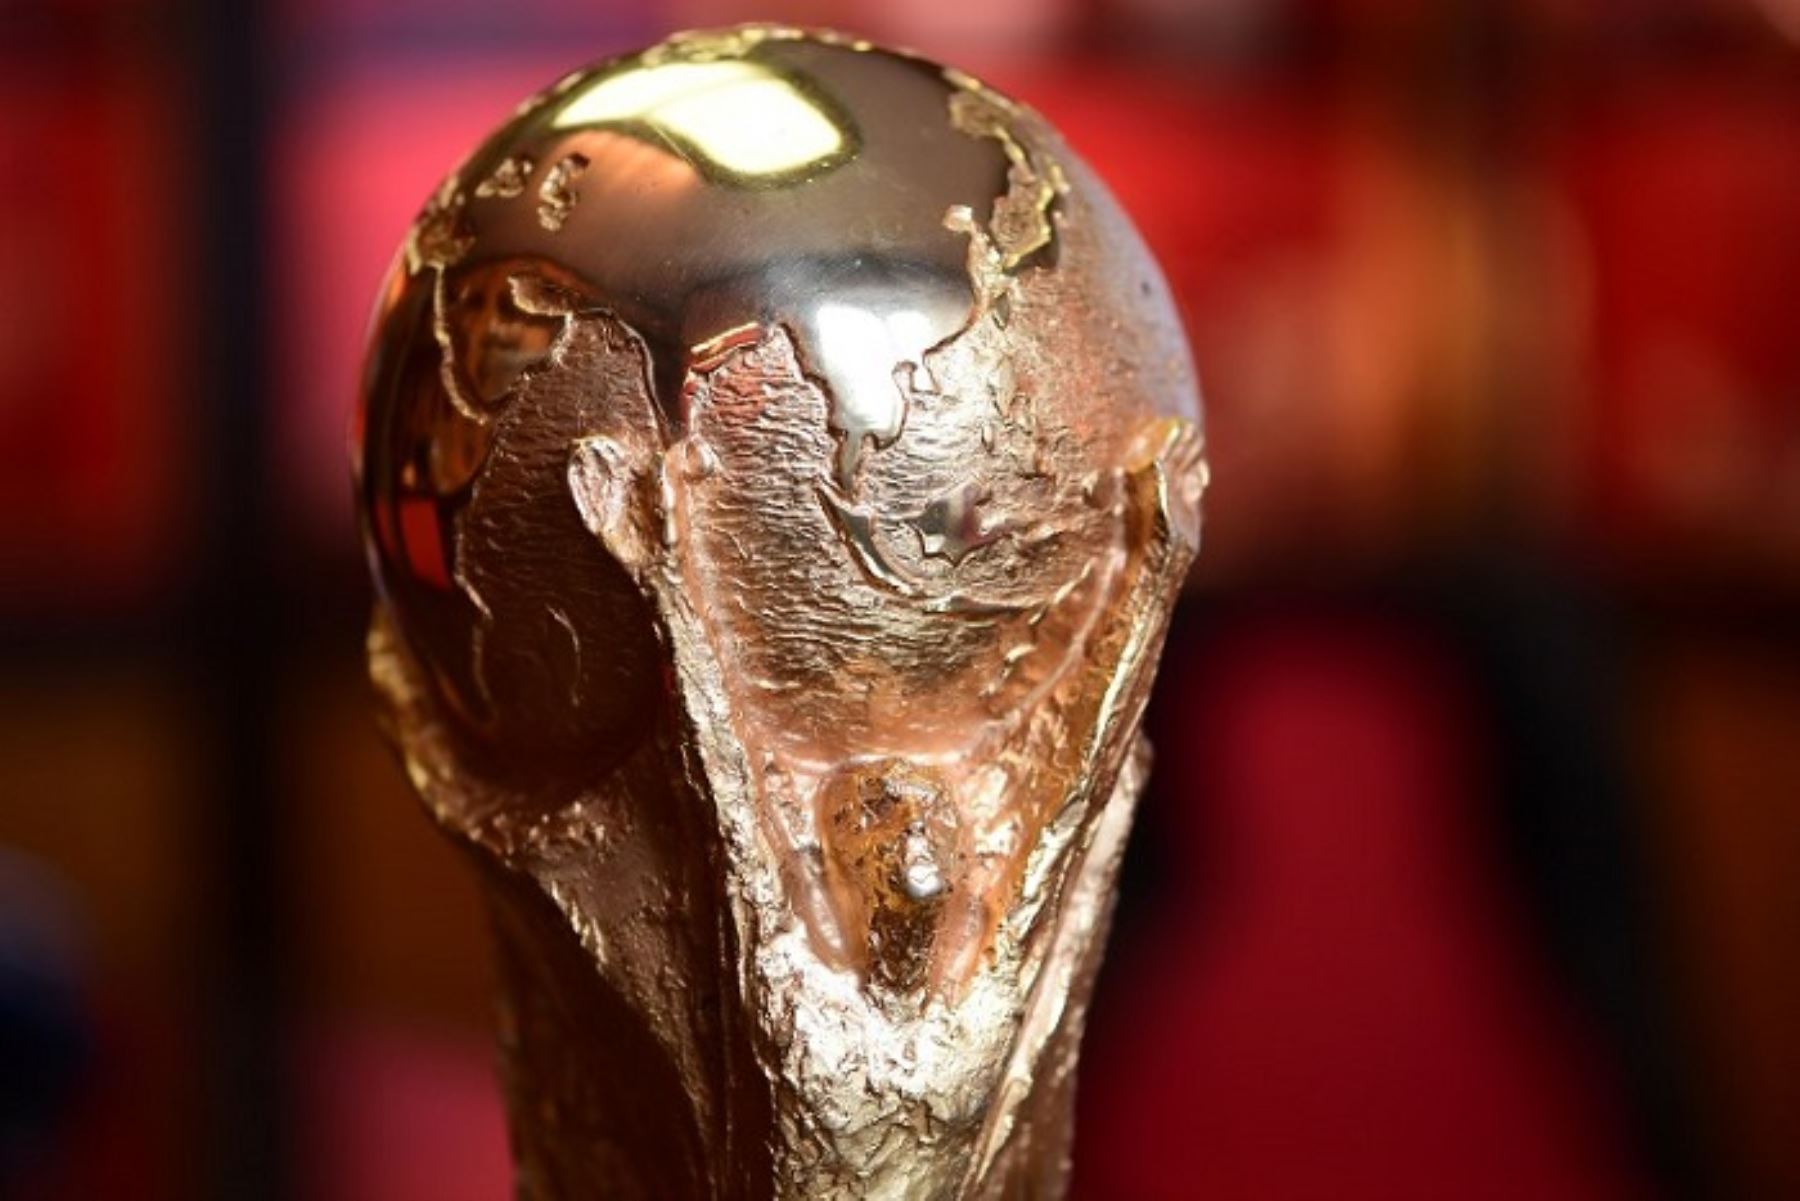 Trofeo de la Copa del mundo Catar 2022  inicia su viaje alrededor del mundo